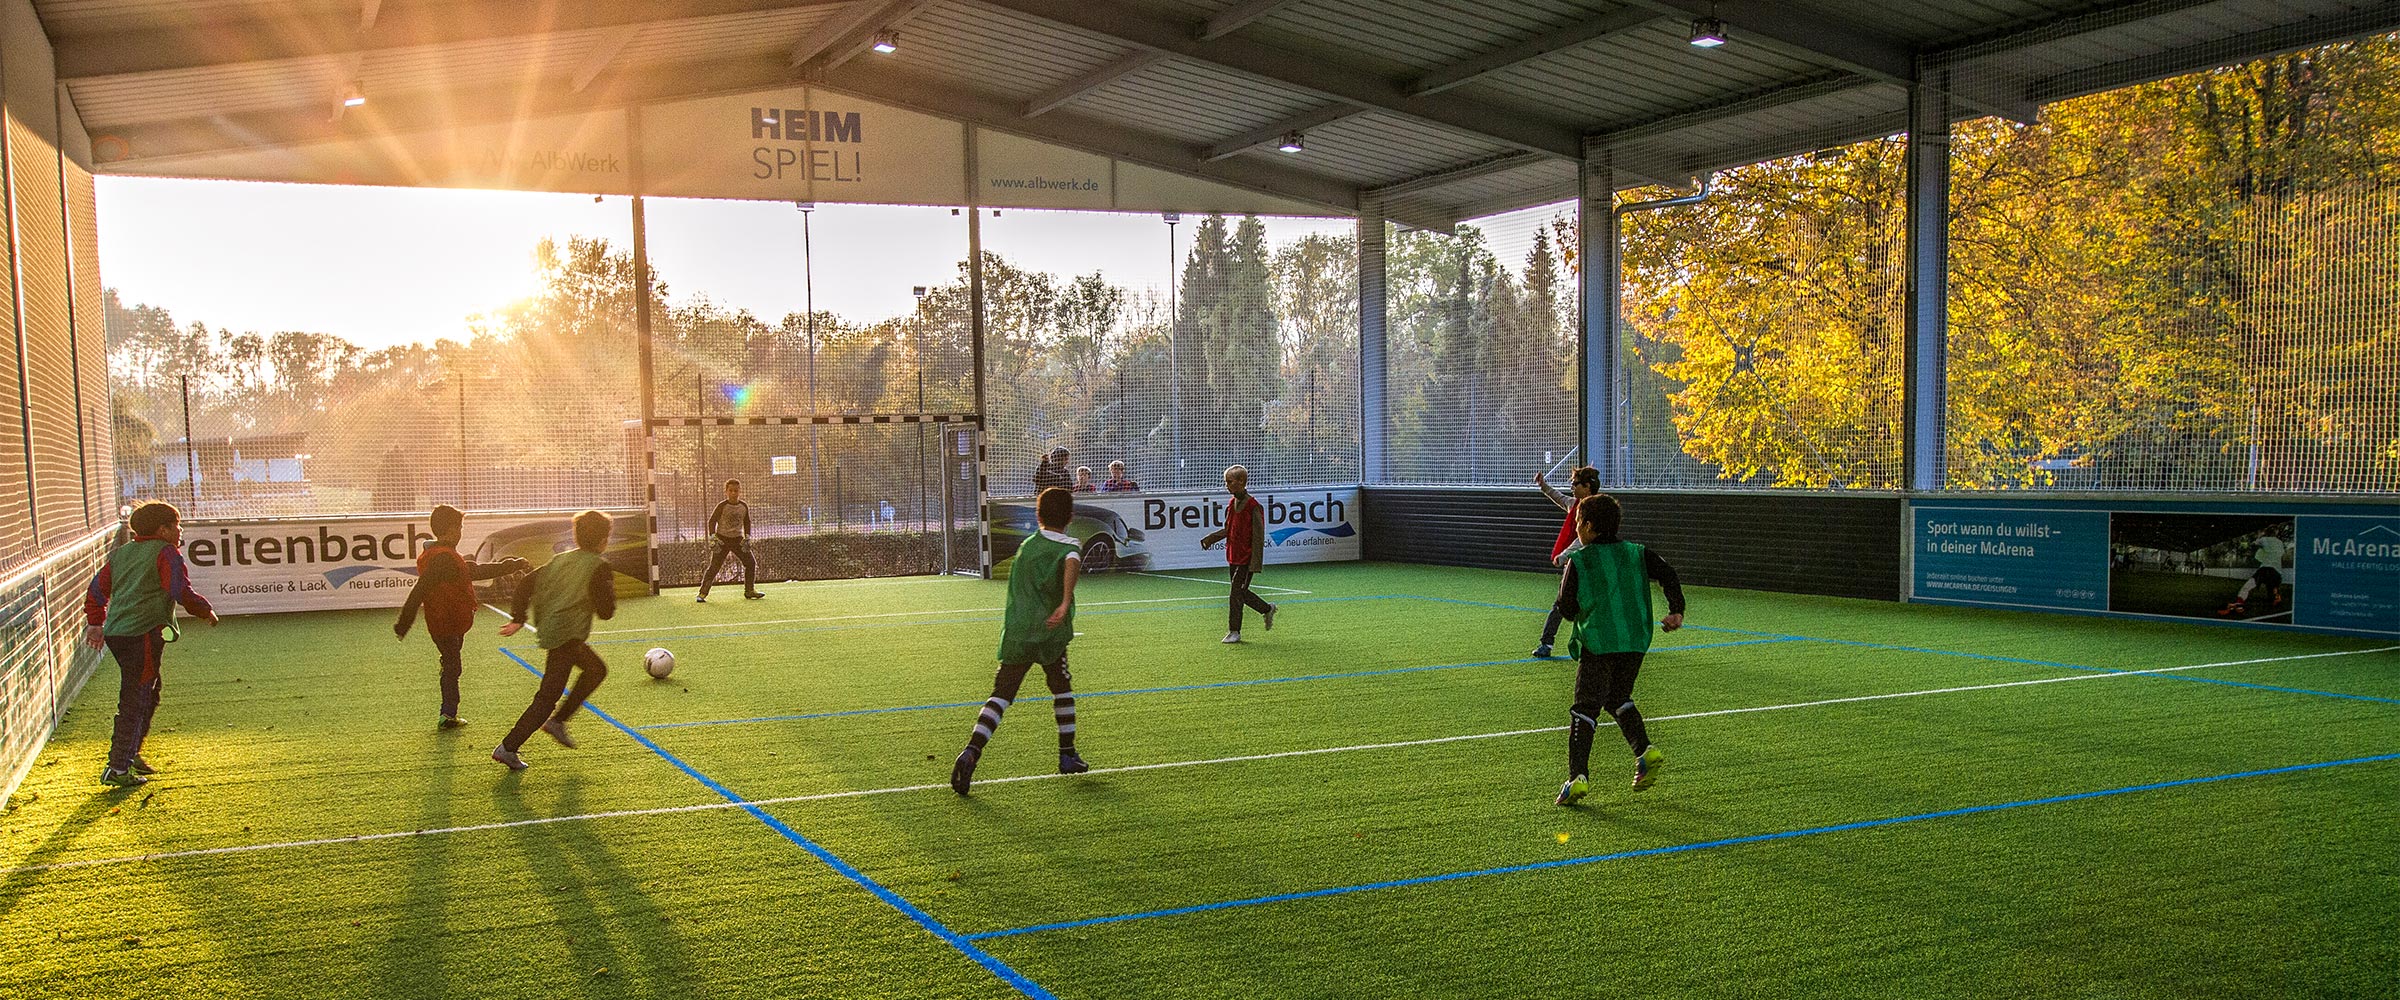 In der Soccerhalle Geislingen führt der SC Geislingen das Training der Kinder und Jugendlichen durch. Vereinstraining in der Freilufthalle.